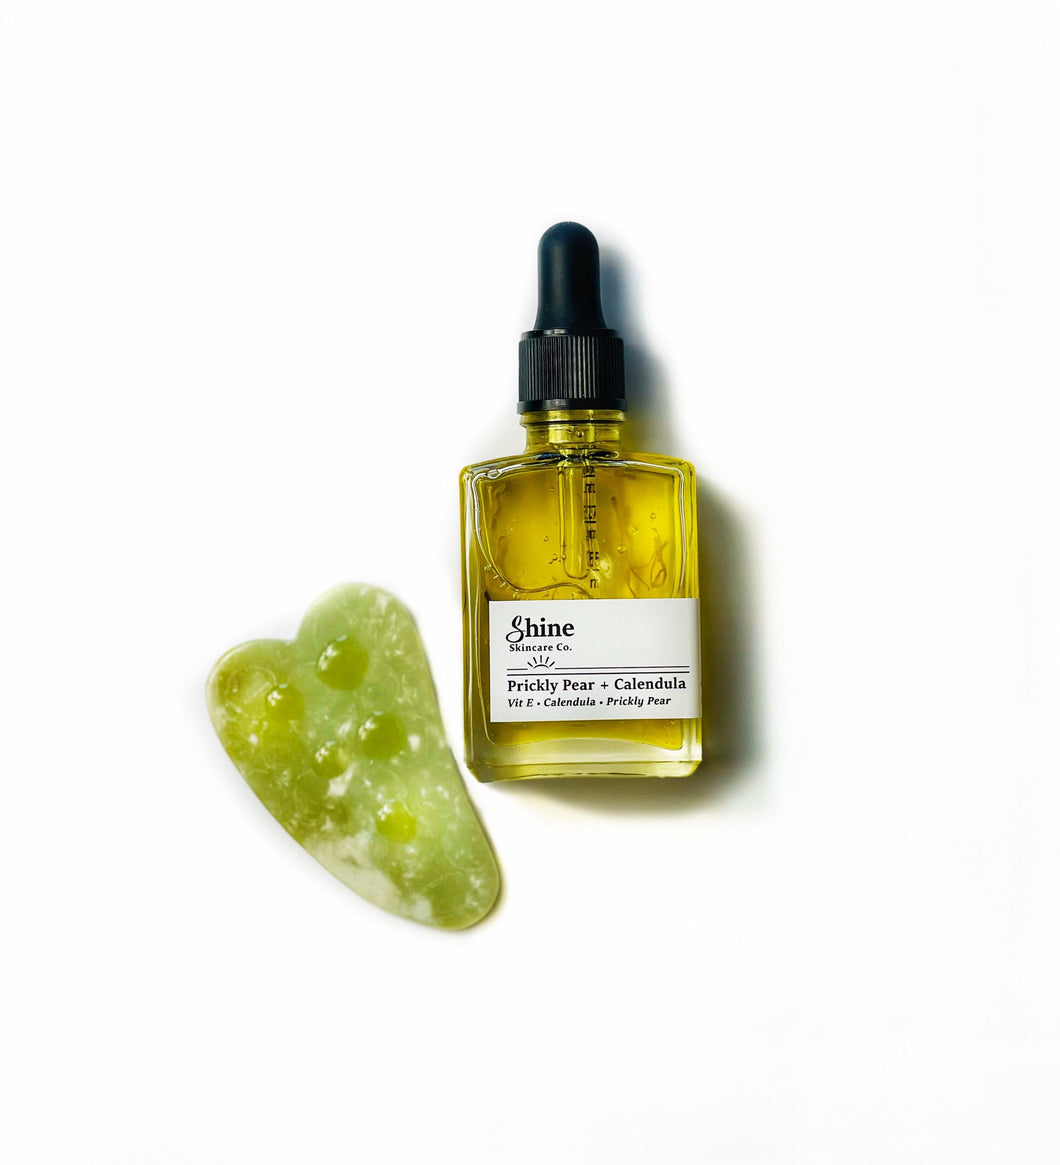 Skincare Gift - Gua Sha - Facial Oil - Natural Skincare - Vegan Gift